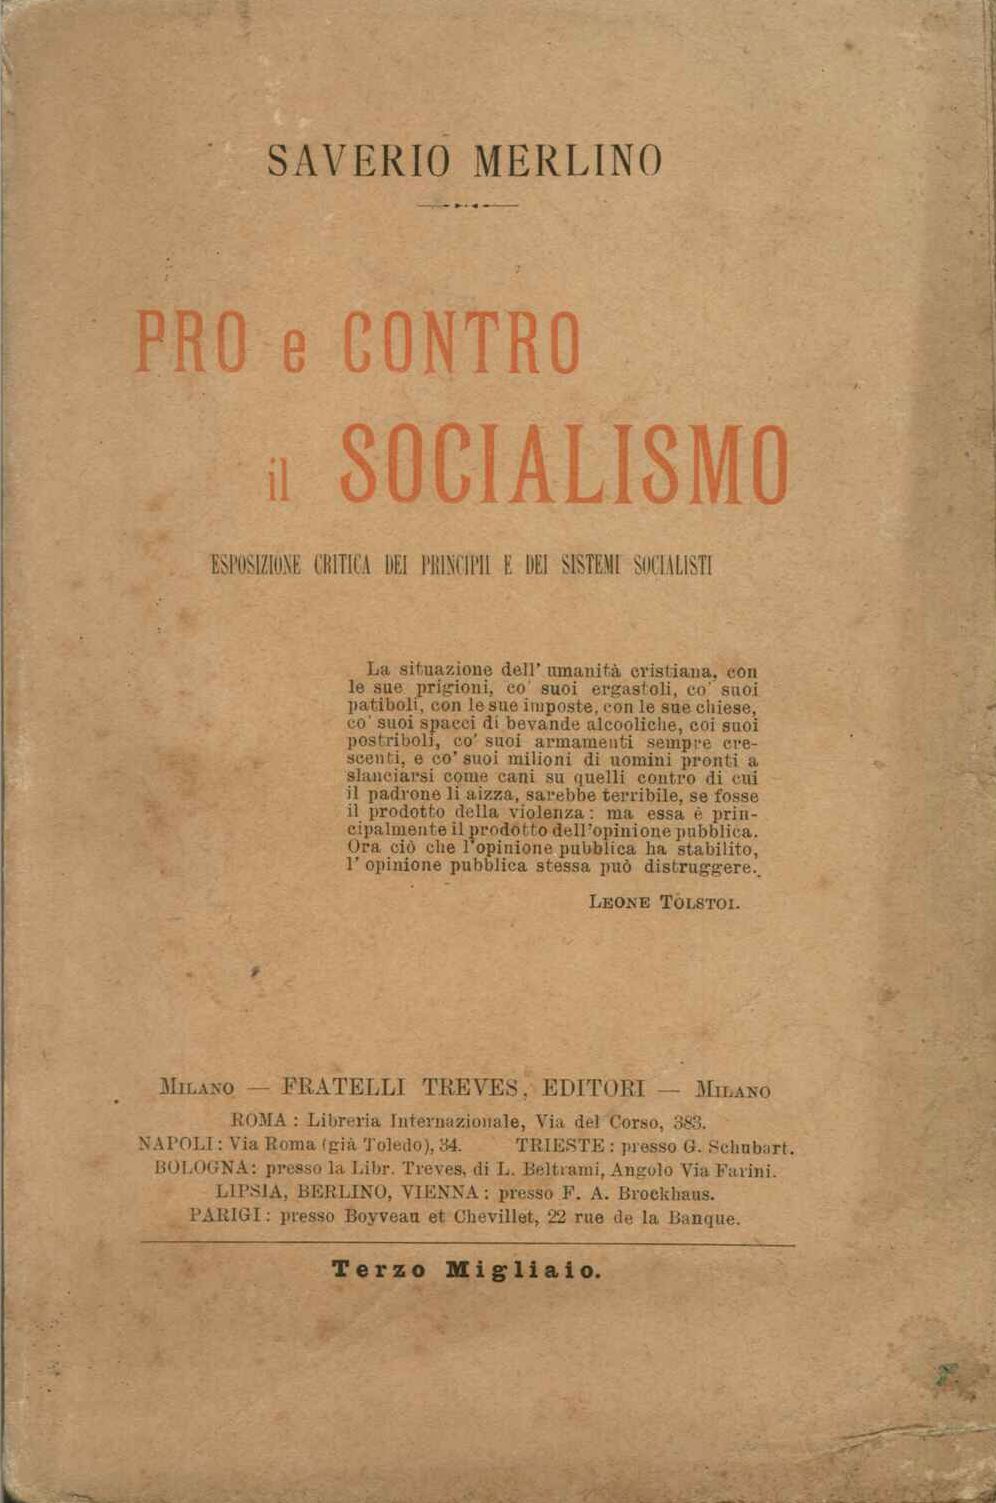 Pro e contro il socialismo